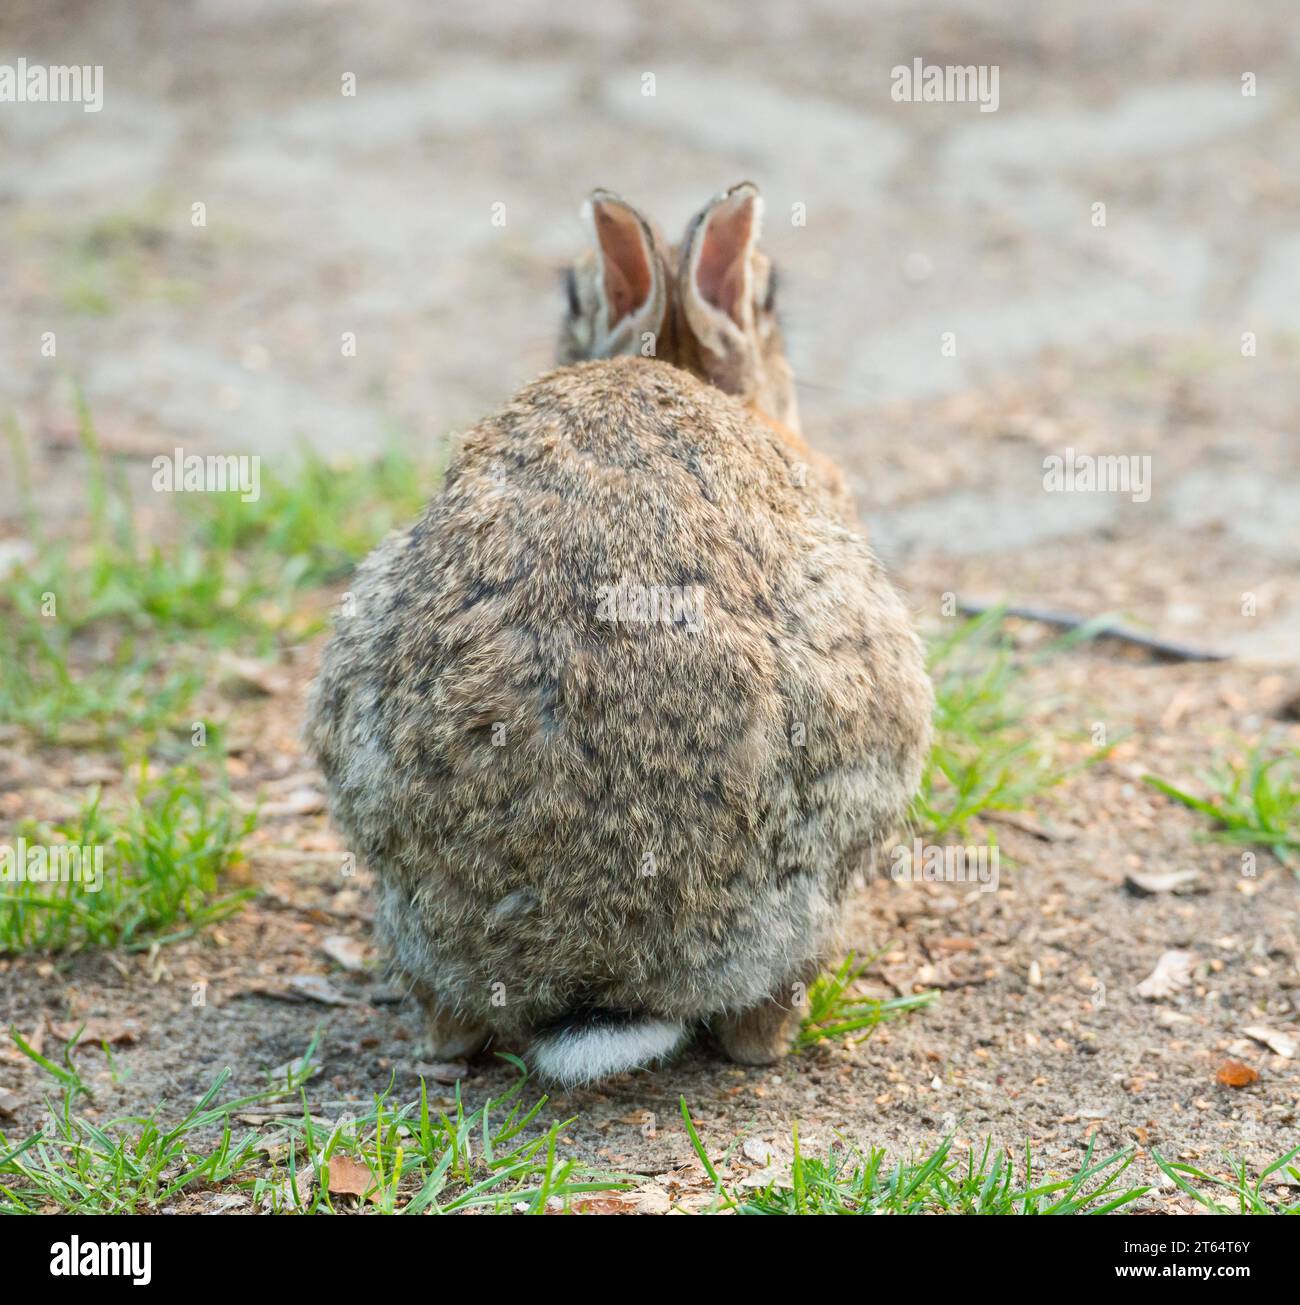 Coniglio europeo (Oryctolagus cuniculus) accovacciato su un terreno sabbioso arido con un po' di erba, vista posteriore, gobba con coda scomoda, orecchie arretrate, roditore Foto Stock